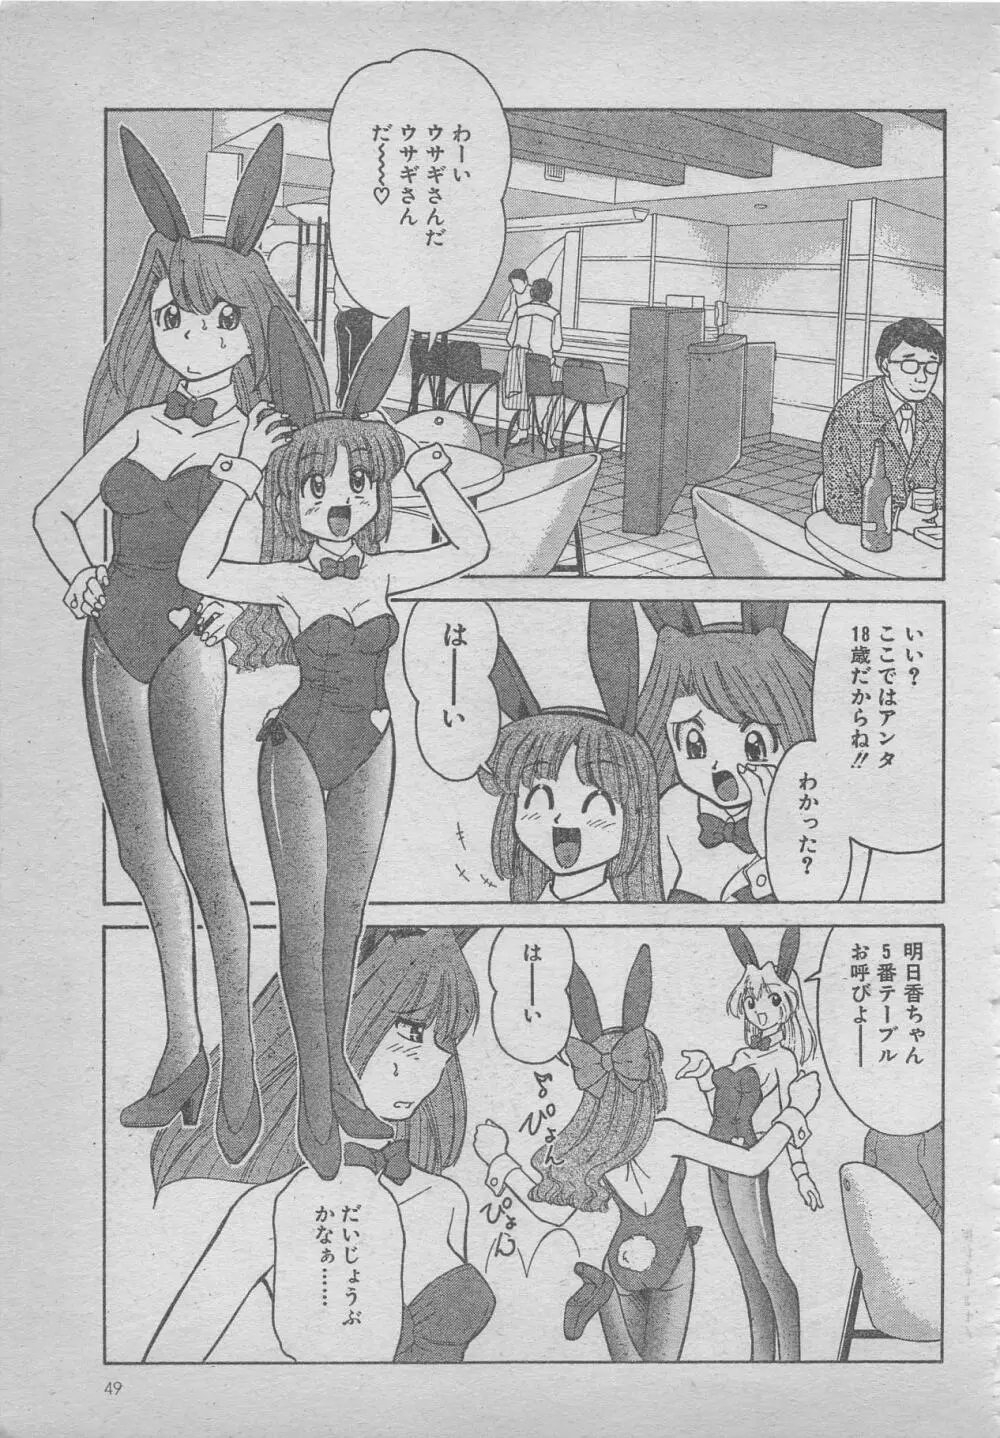 comic RX 1999 vol.5 49ページ